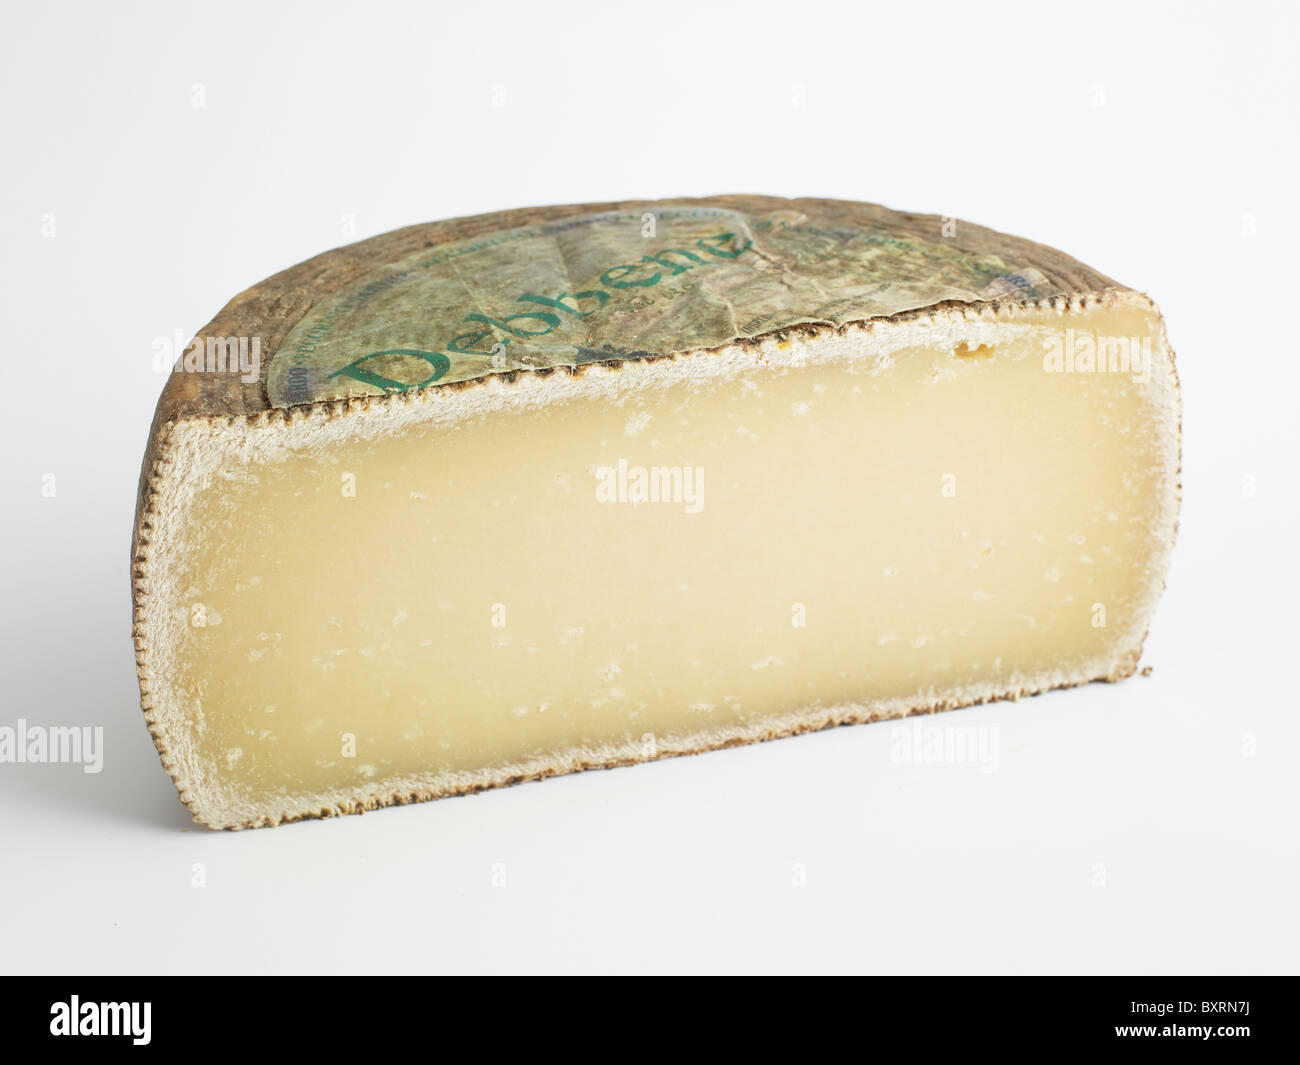 Italian Pecorino Sardo ewe's milk cheese, close-up Stock Photo